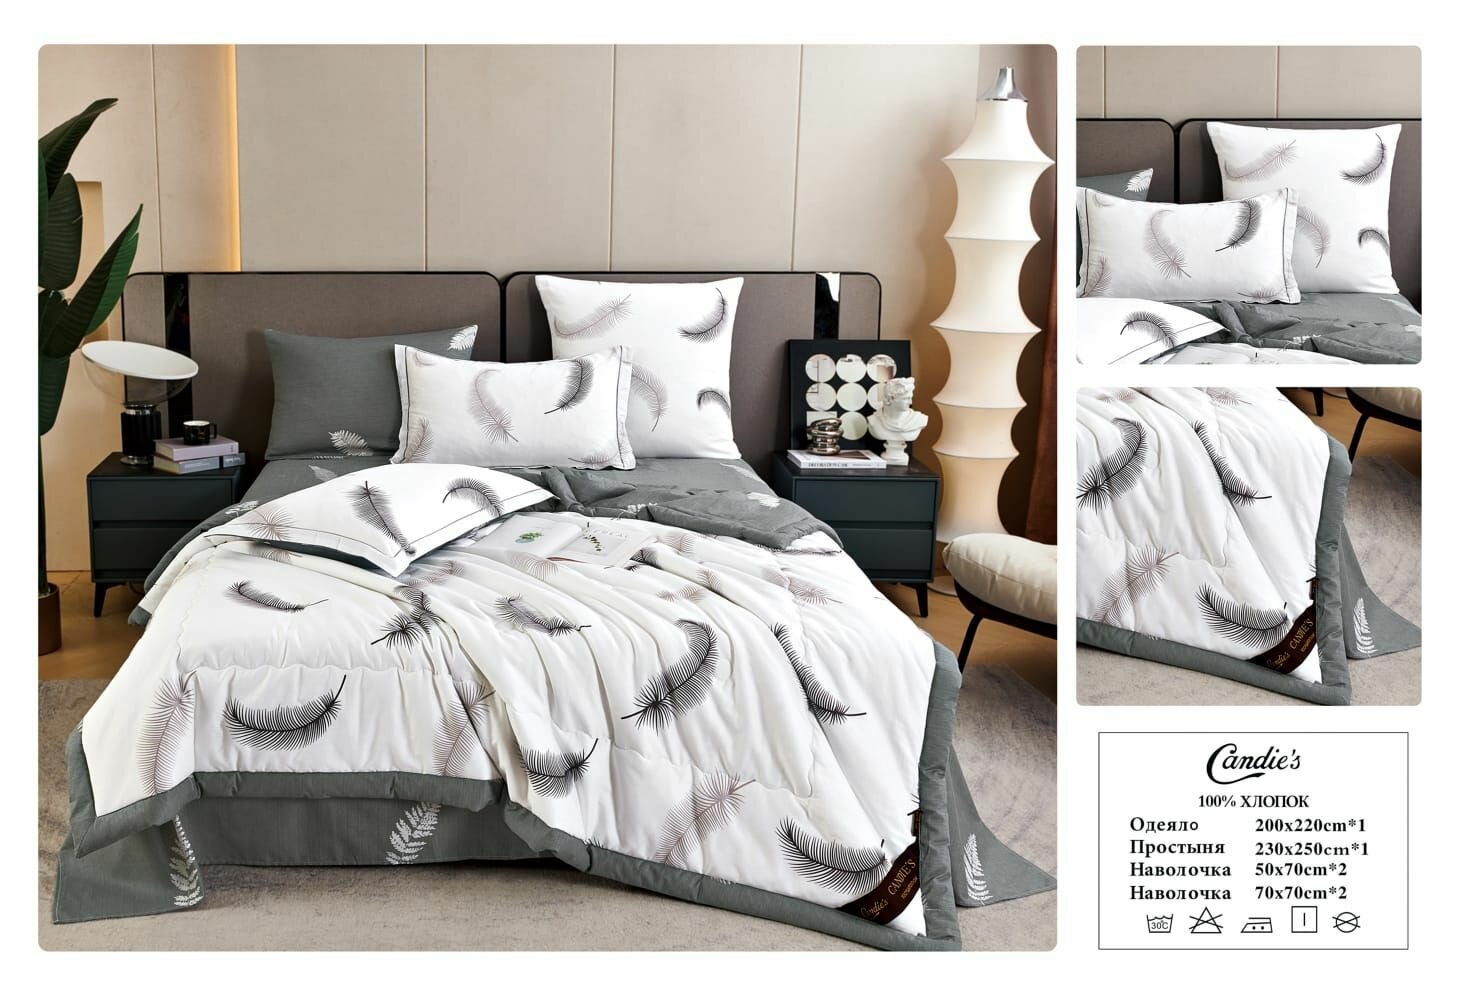 Комплект постельного белья с одеялом CANDIES, Хлопок, Евро, наволочки 50x70, 70х70